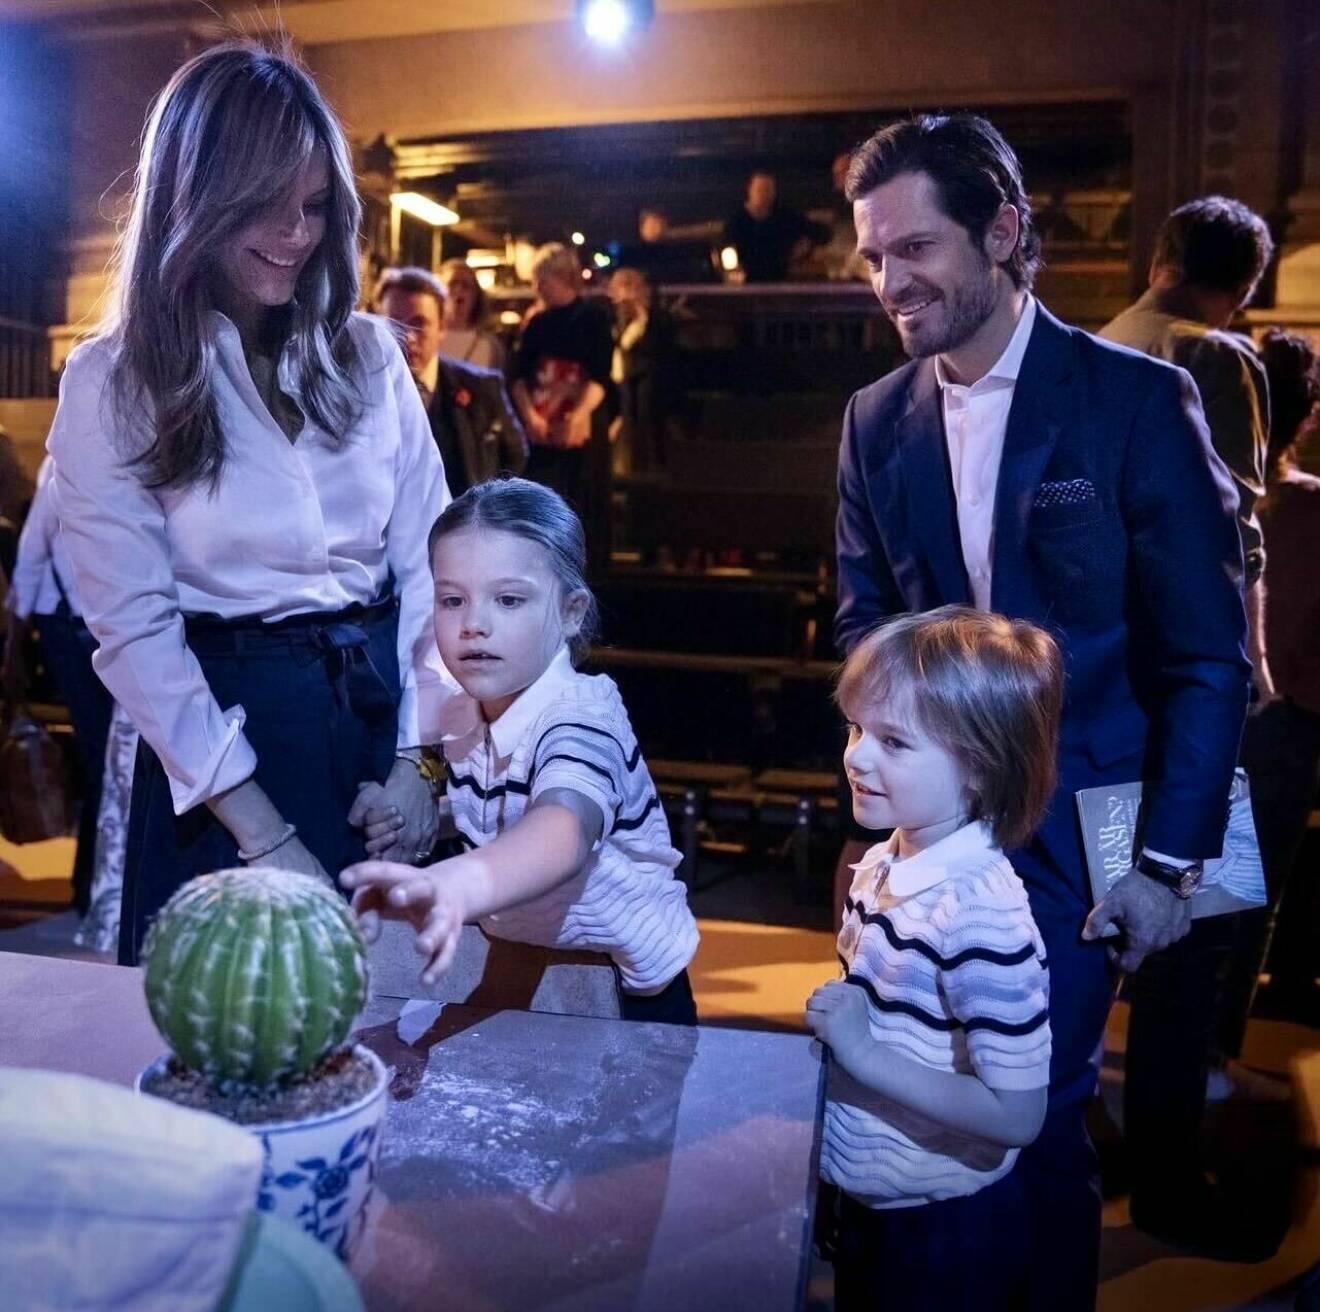 Prinsessan Sofia och prins Carl Philip med sina barn på barnoperan Var är smörgåsen?